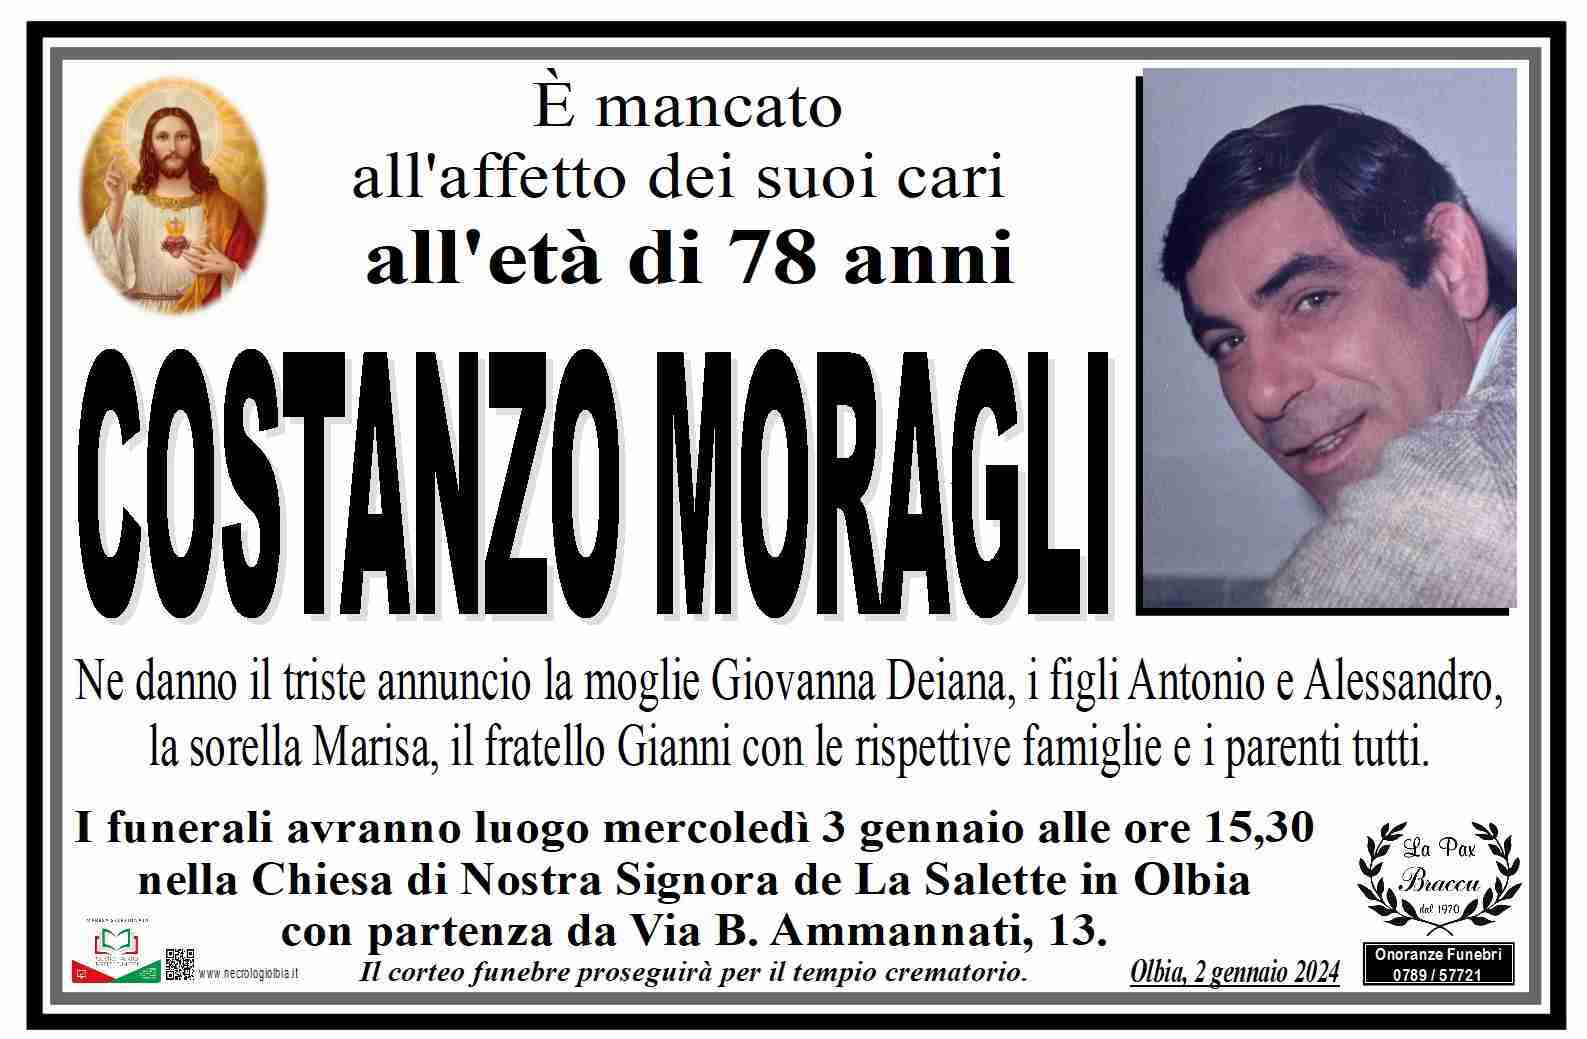 Costanzo Moragli